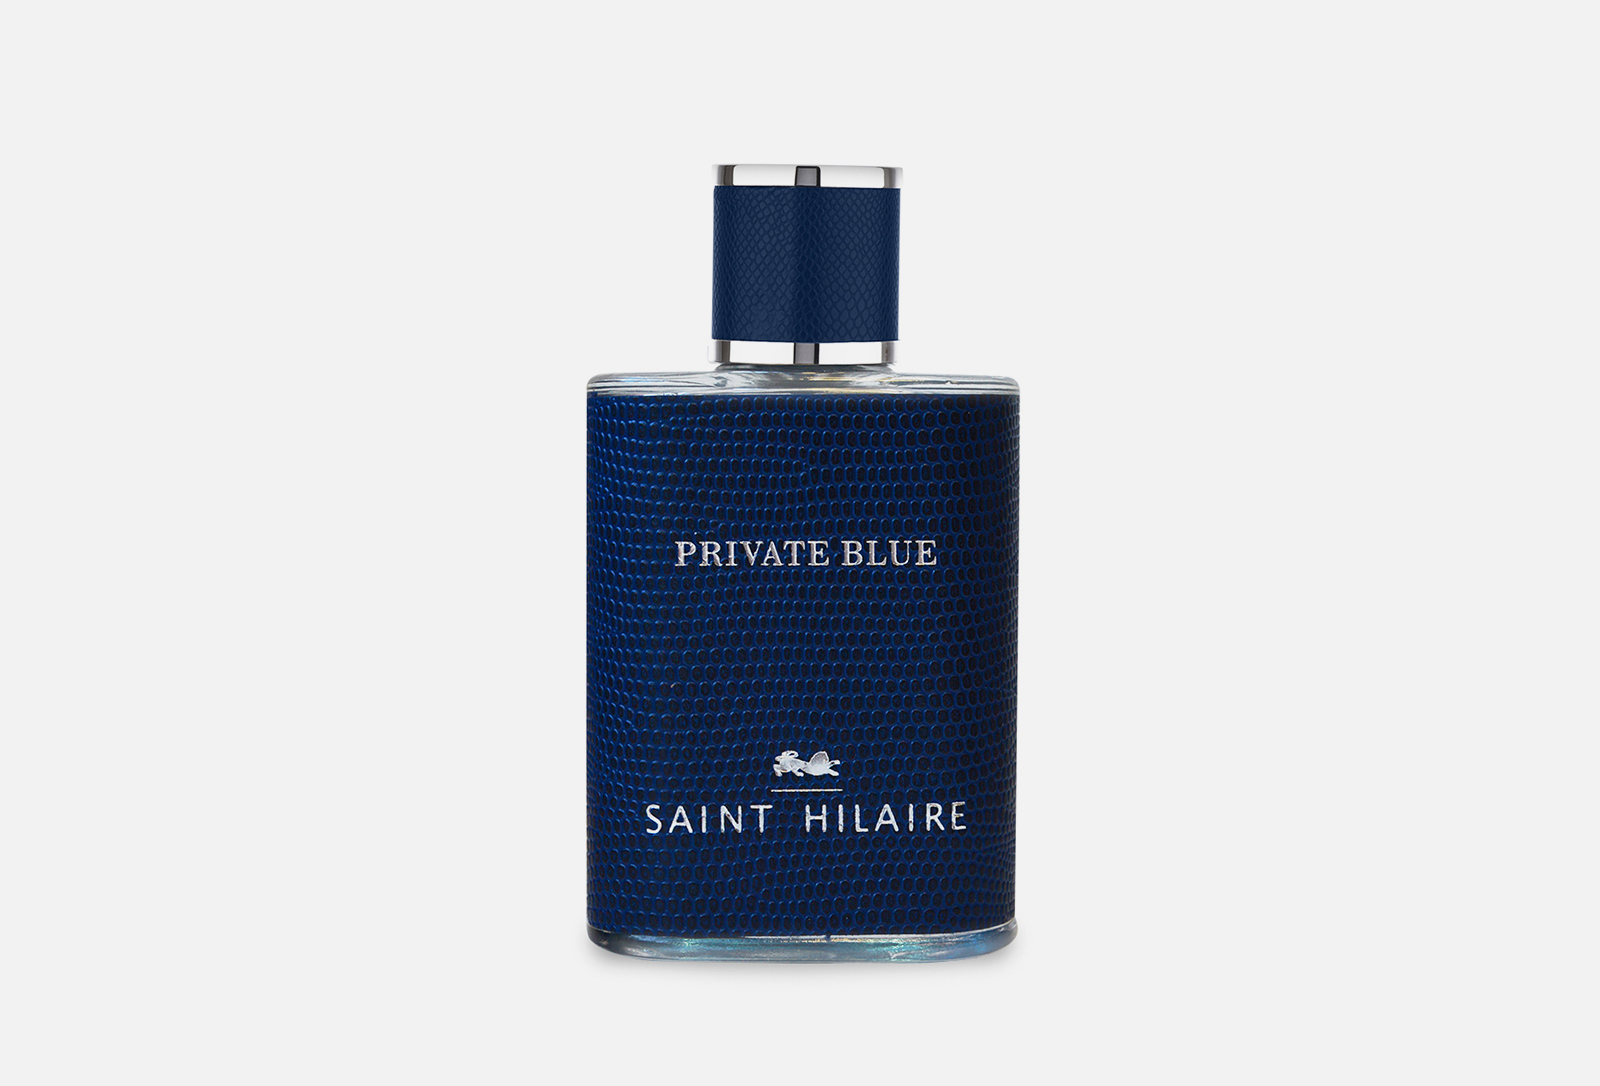 Private blue